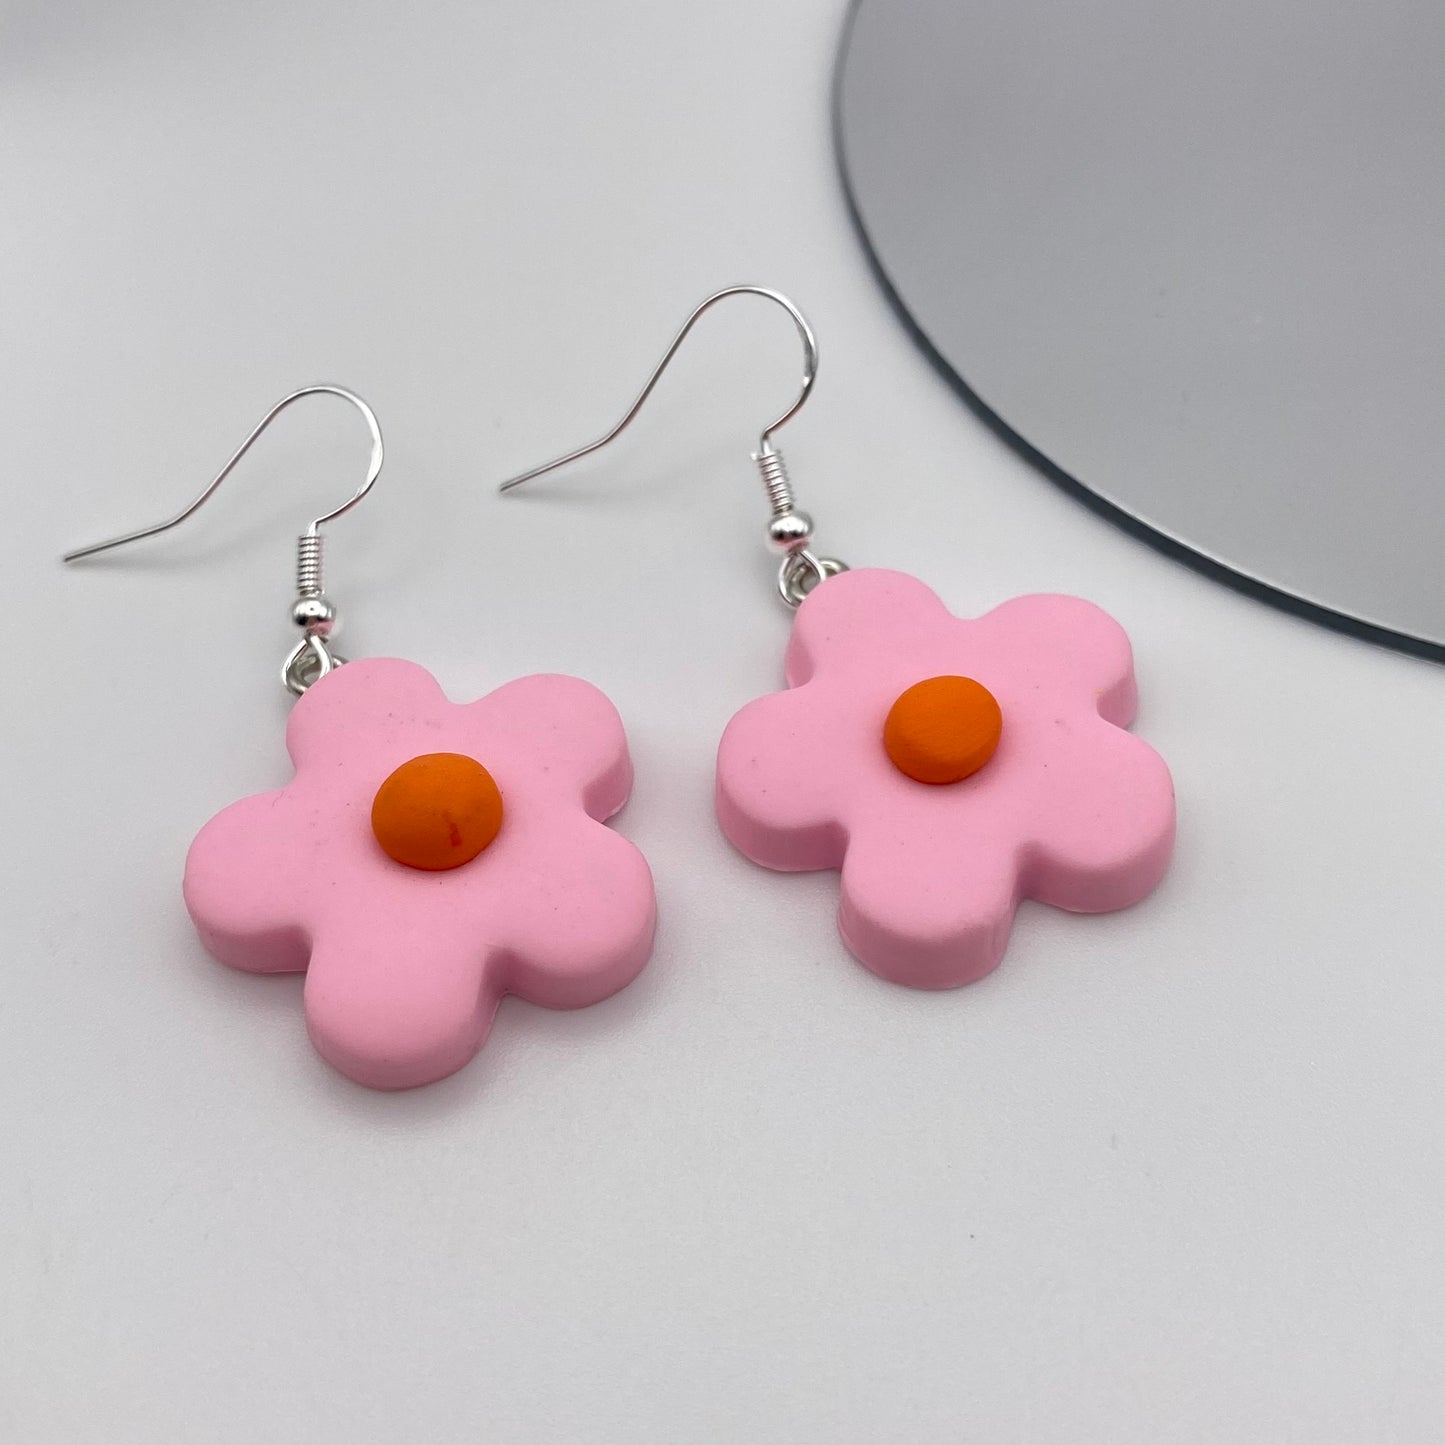 Pink Flower Earrings